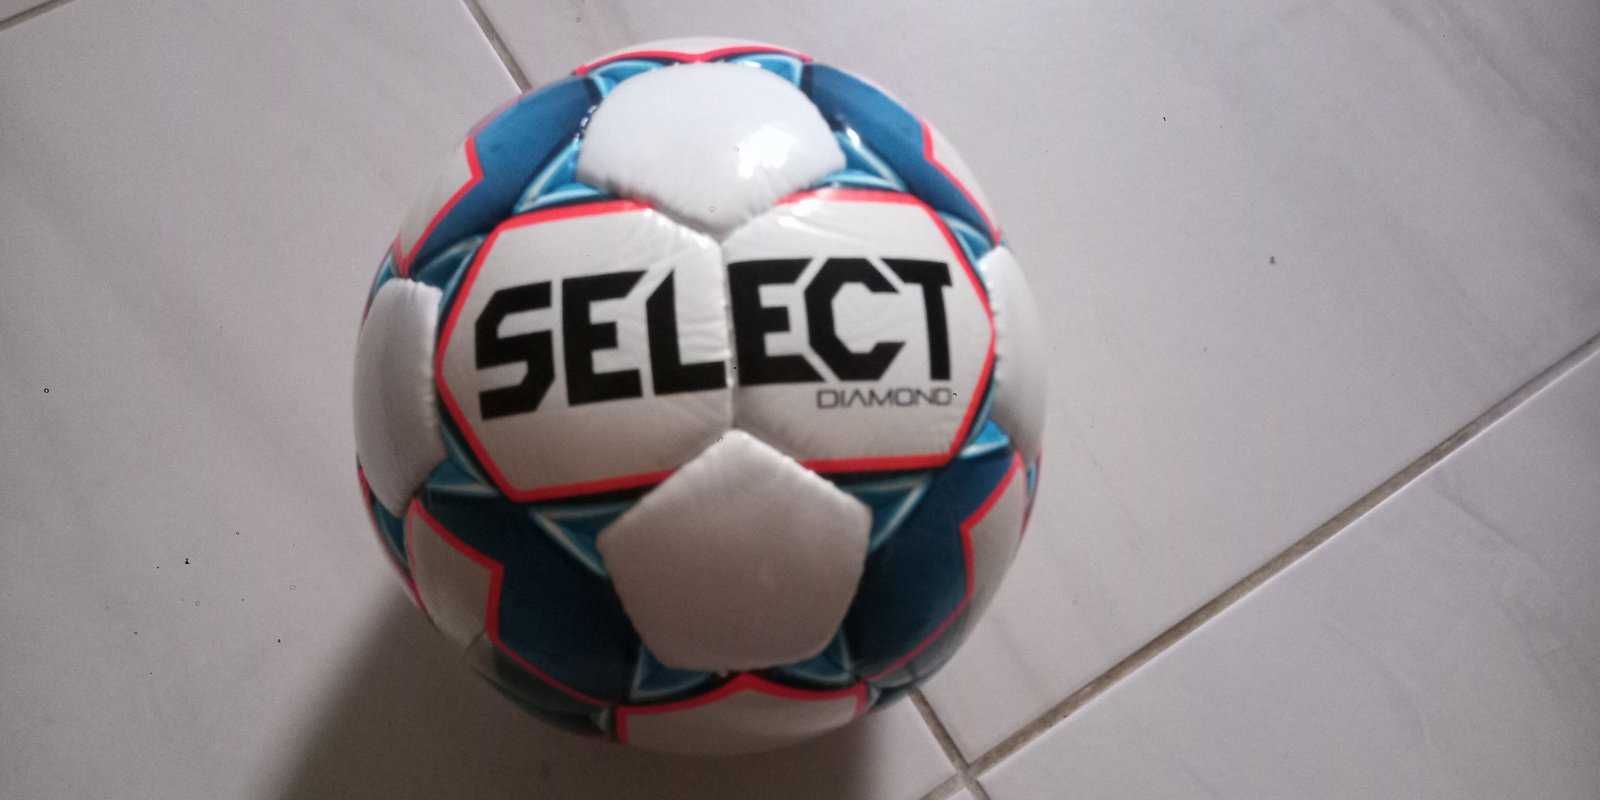 М'яч футбольний Select DIAMOND розмір 3